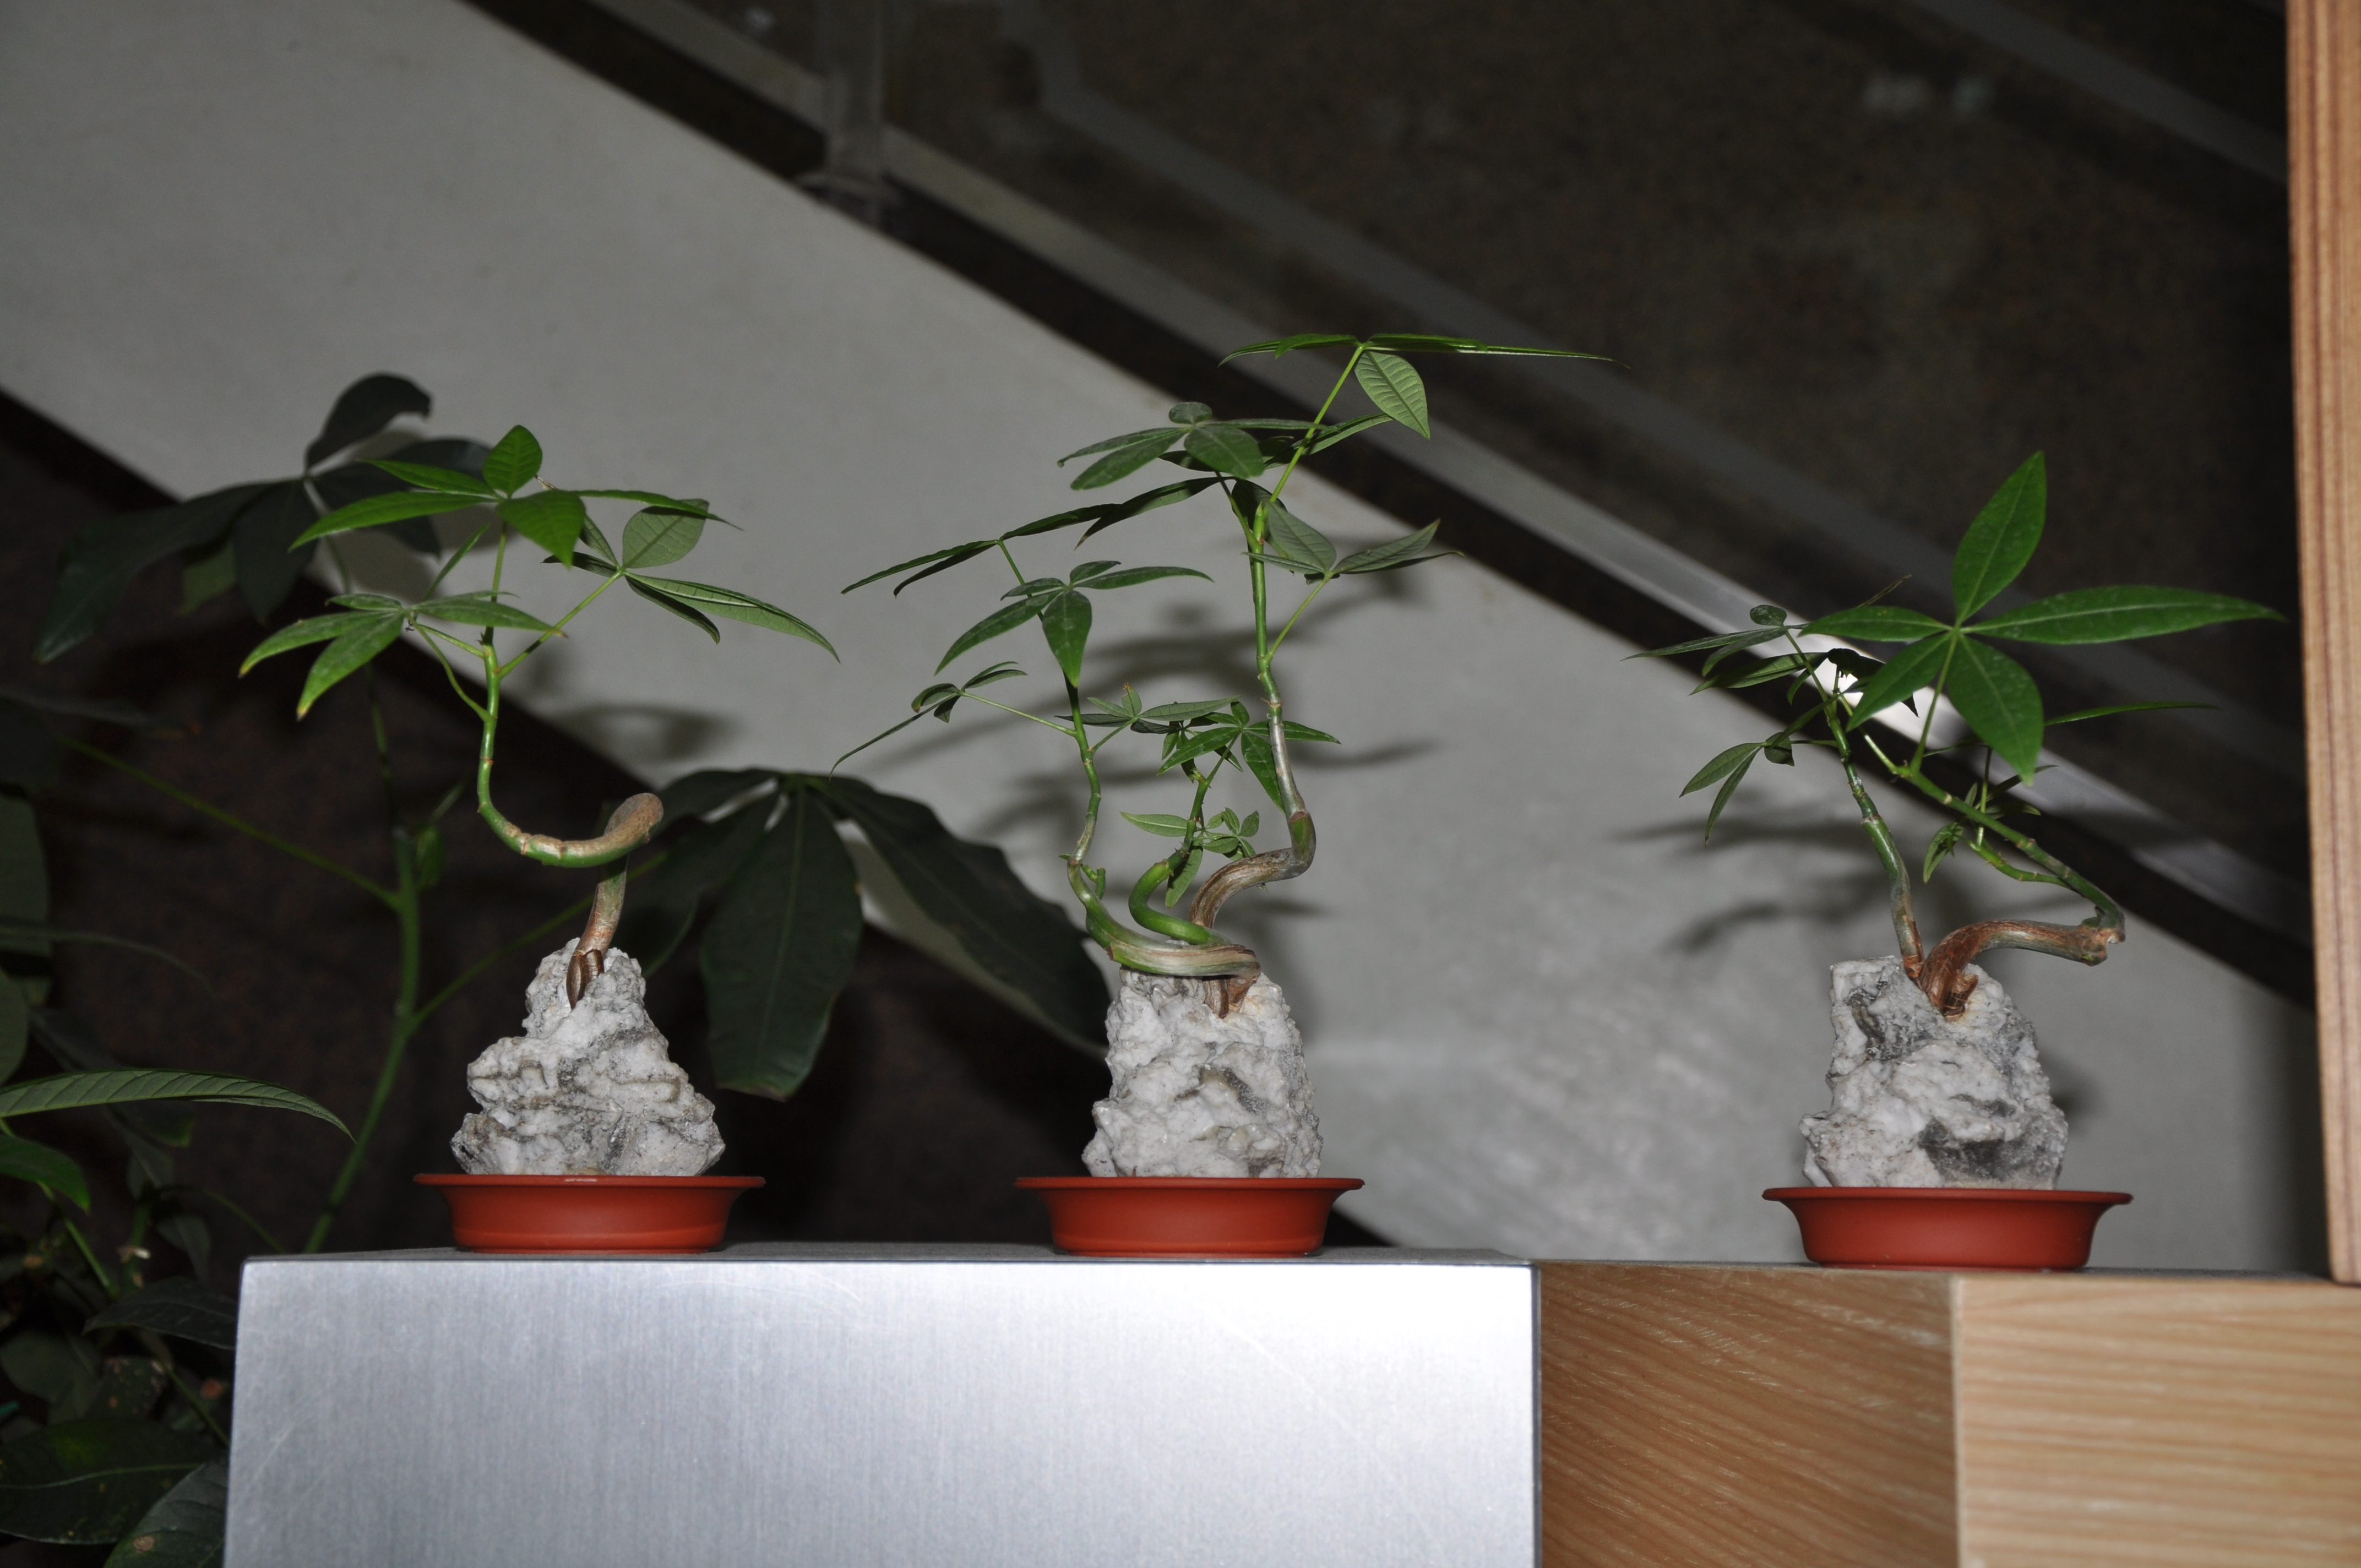 造型嫁接的馬拉巴栗盆栽藝術展 於屏科大圖書館 黑胡桃網路閣